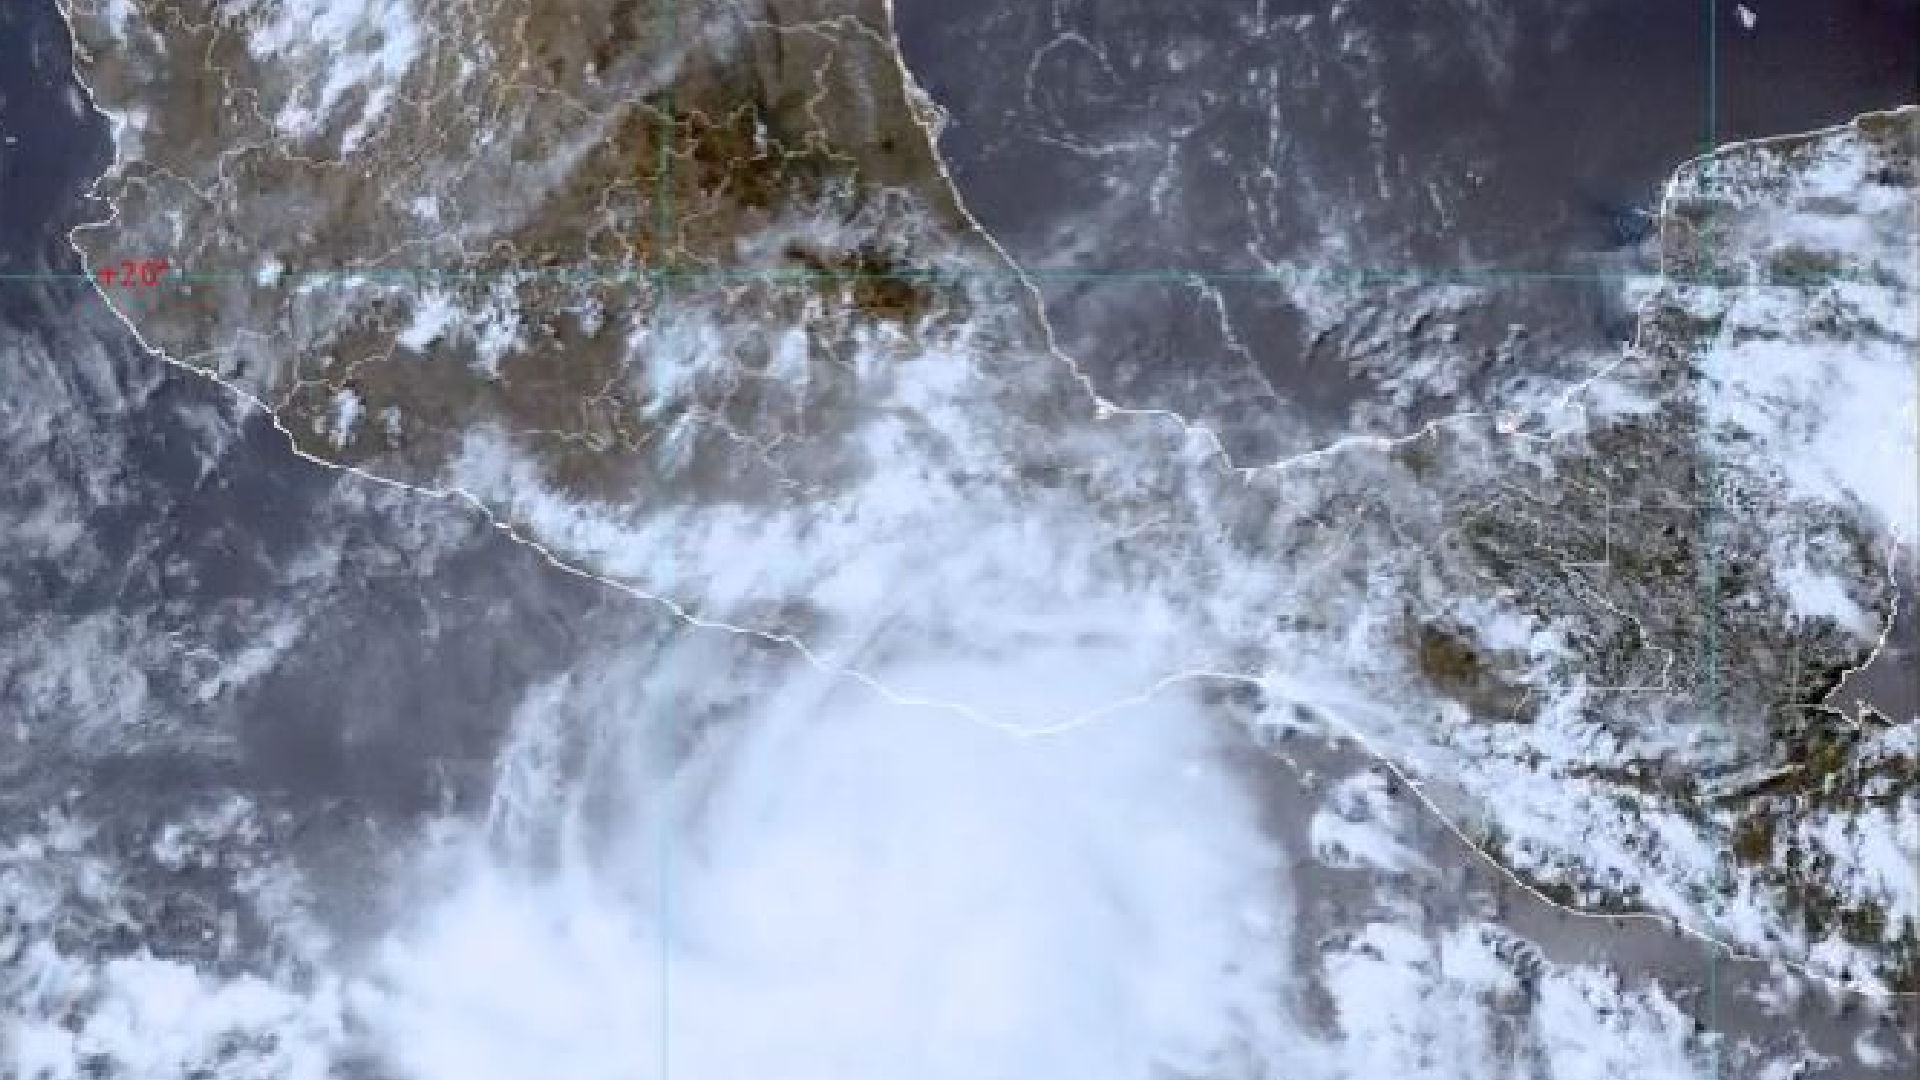 Huracán Agatha tocó tierra como categoría 2 (165 km/h) en San Pedro Pochutla, Oaxaca